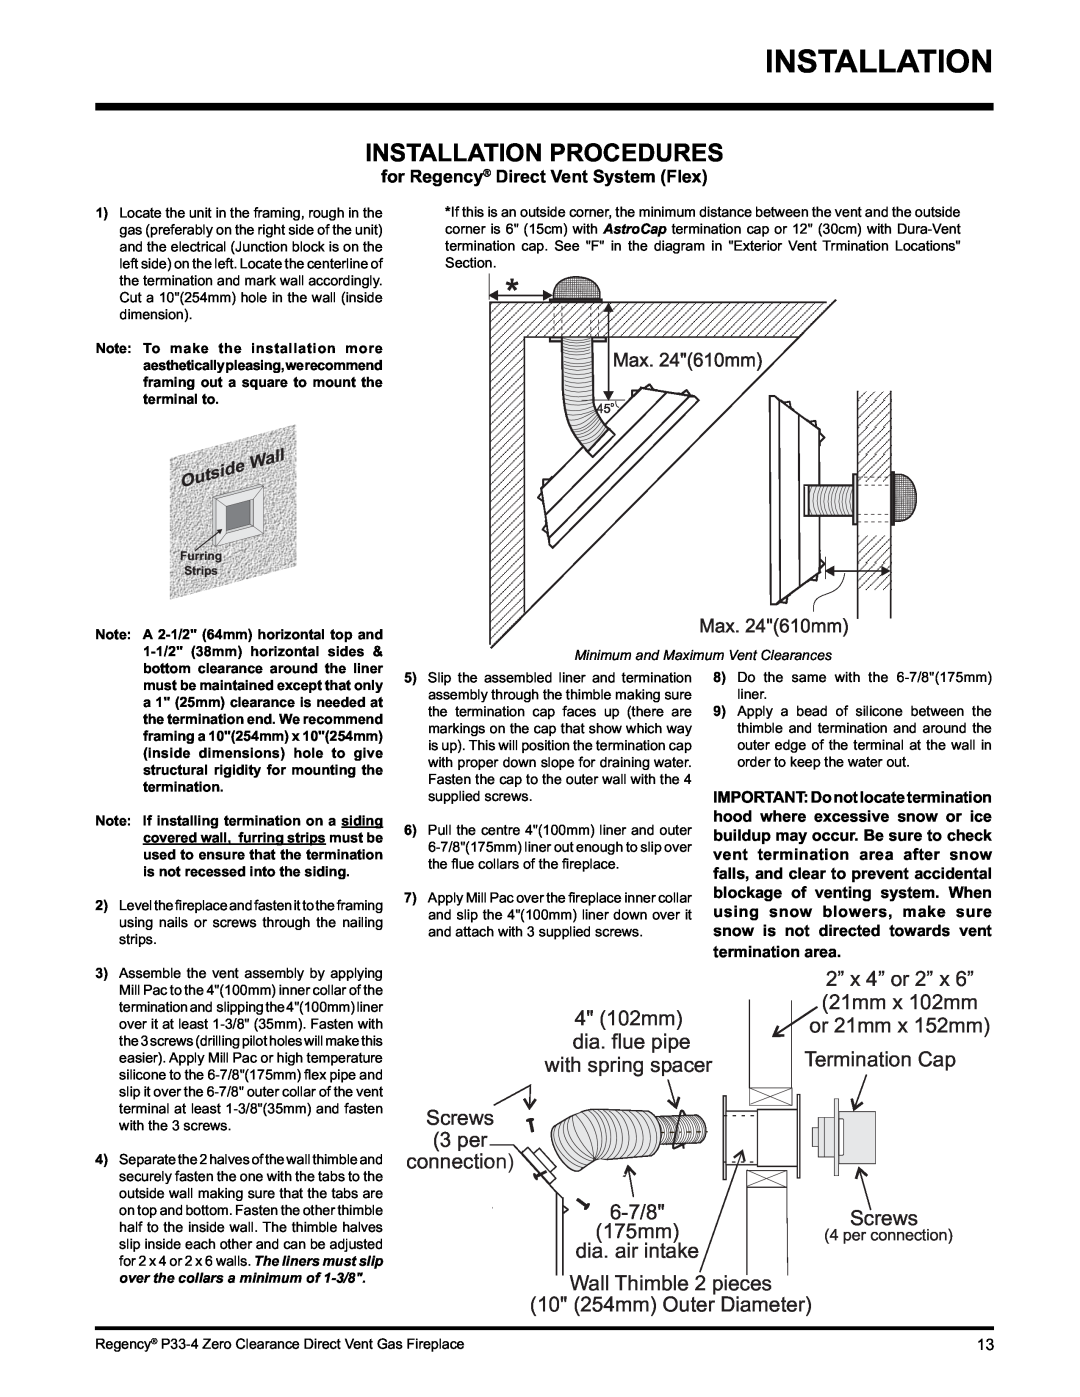 Regency P33-LP4 installation manual Installation Procedures 